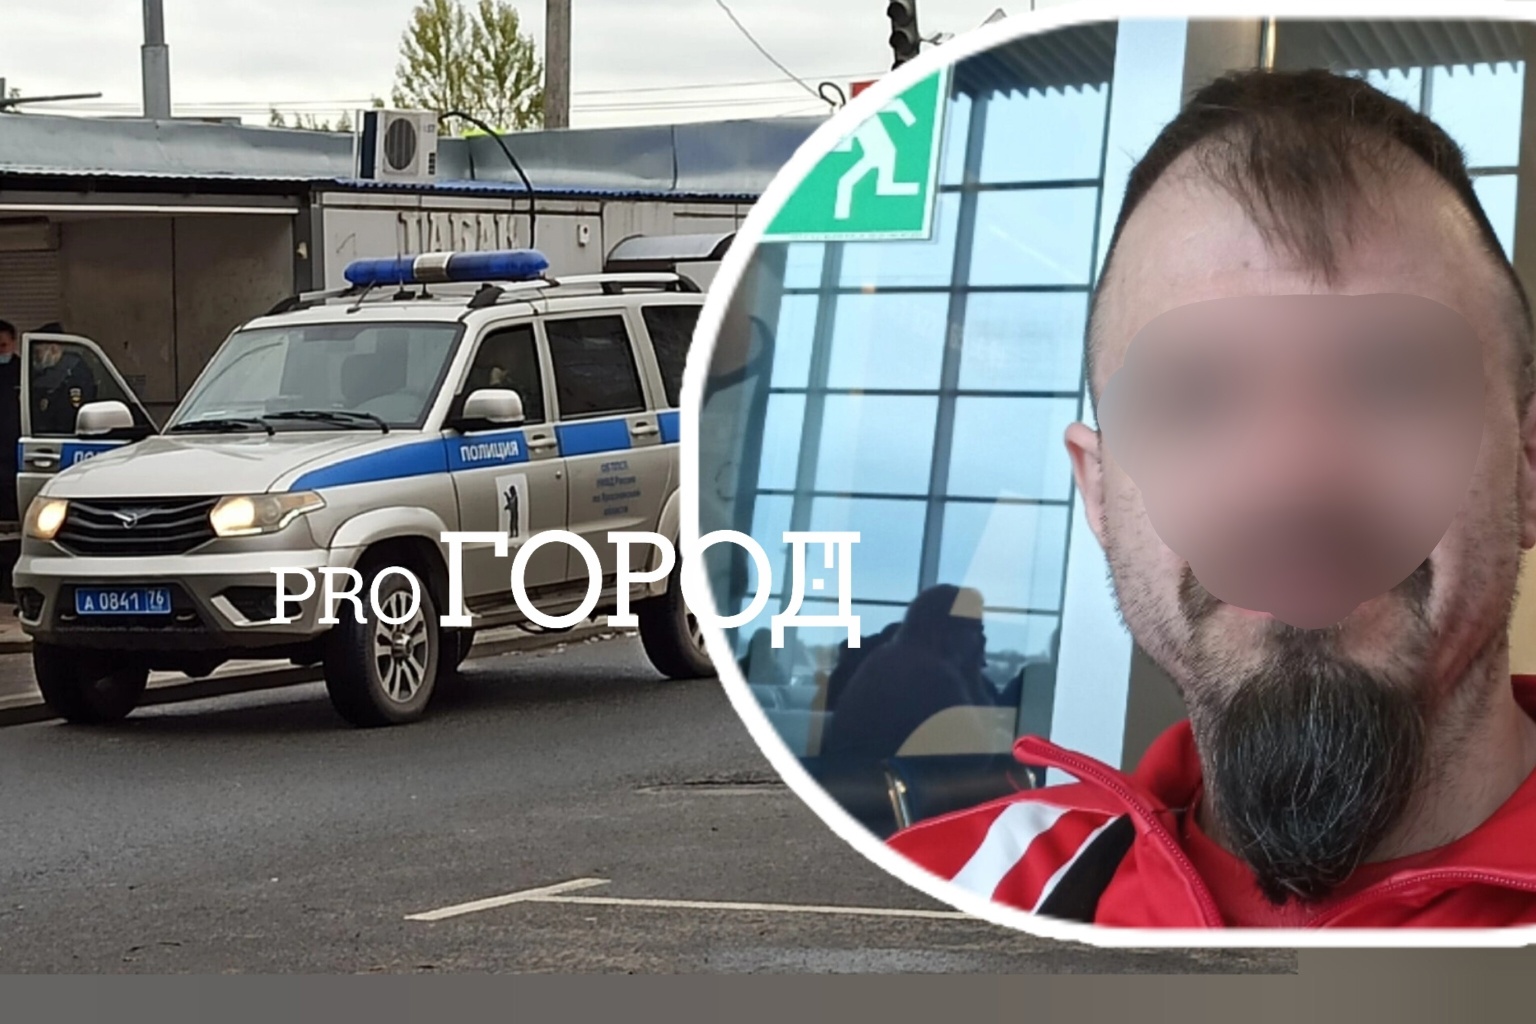  В Ярославле в машине зарезали известного спортивного массажиста